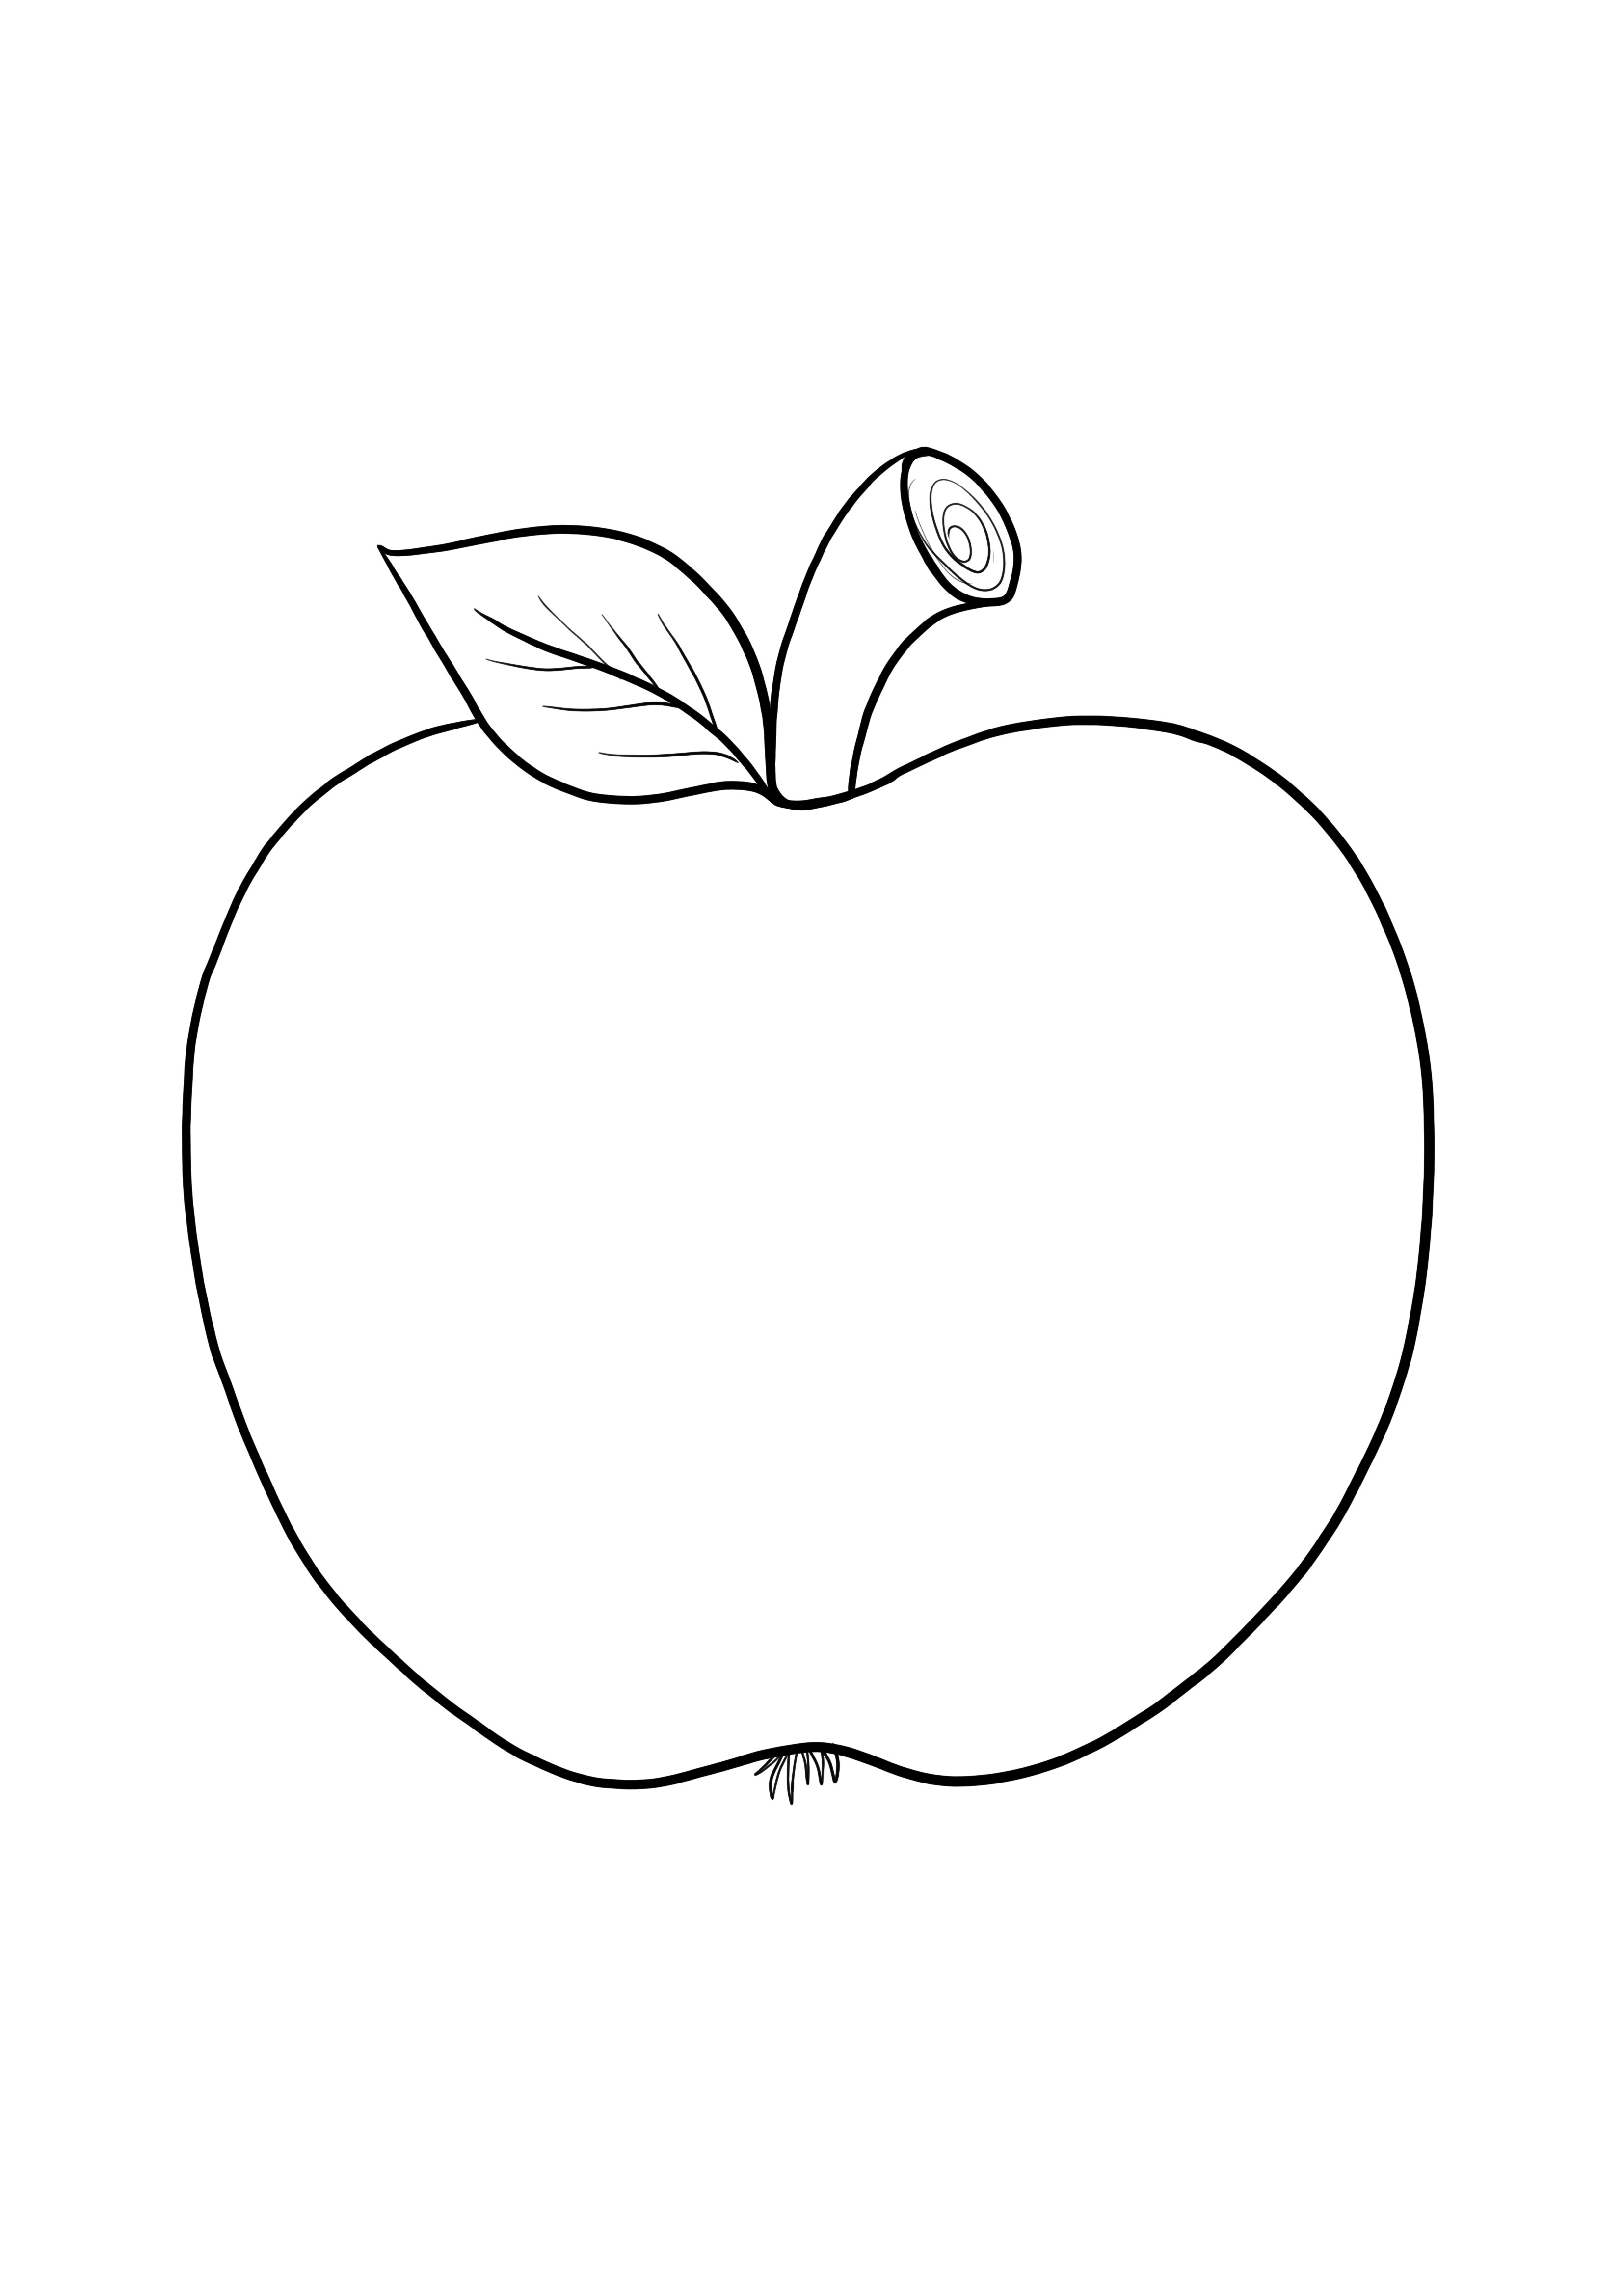 Semplice immagine di mela vuota per una facile colorazione per la stampa gratuita dei bambini